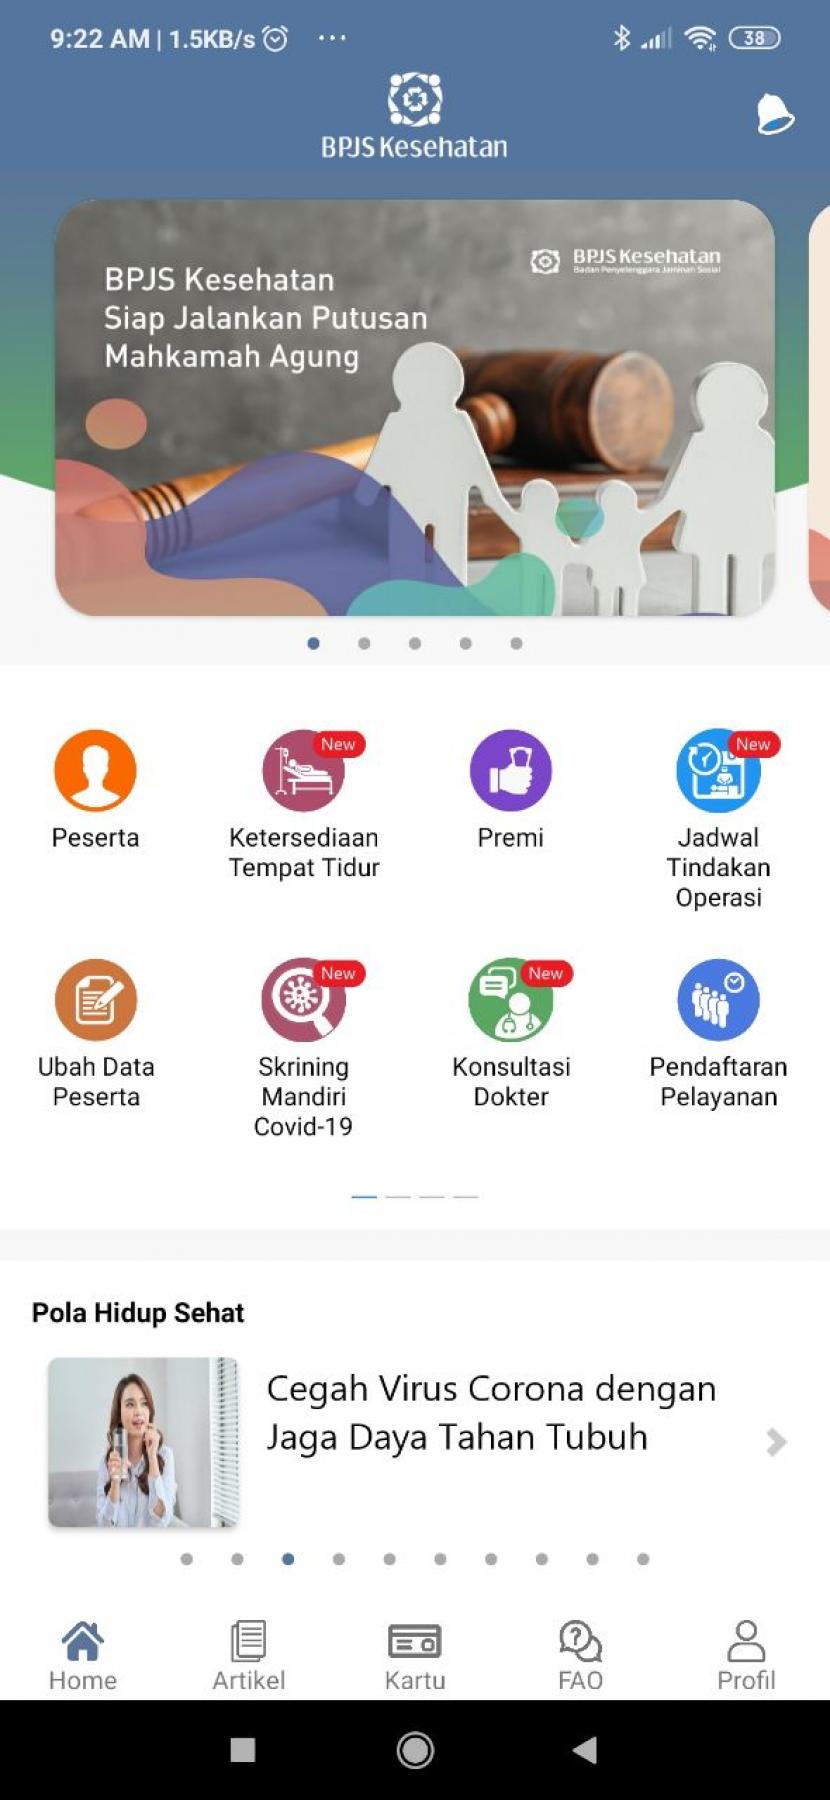 Peserta Program Jaminan Kesehatan Nasional-Kartu Indonesia Sehat (JKN-KIS) kini dapat memanfaatkan aplikasi Mobile JKN untuk lakukan skrining mandiri gejala Corona Virus Disease 2019 (Covid-19) melalui fitur “Skrining Mandiri Covid-19”. 